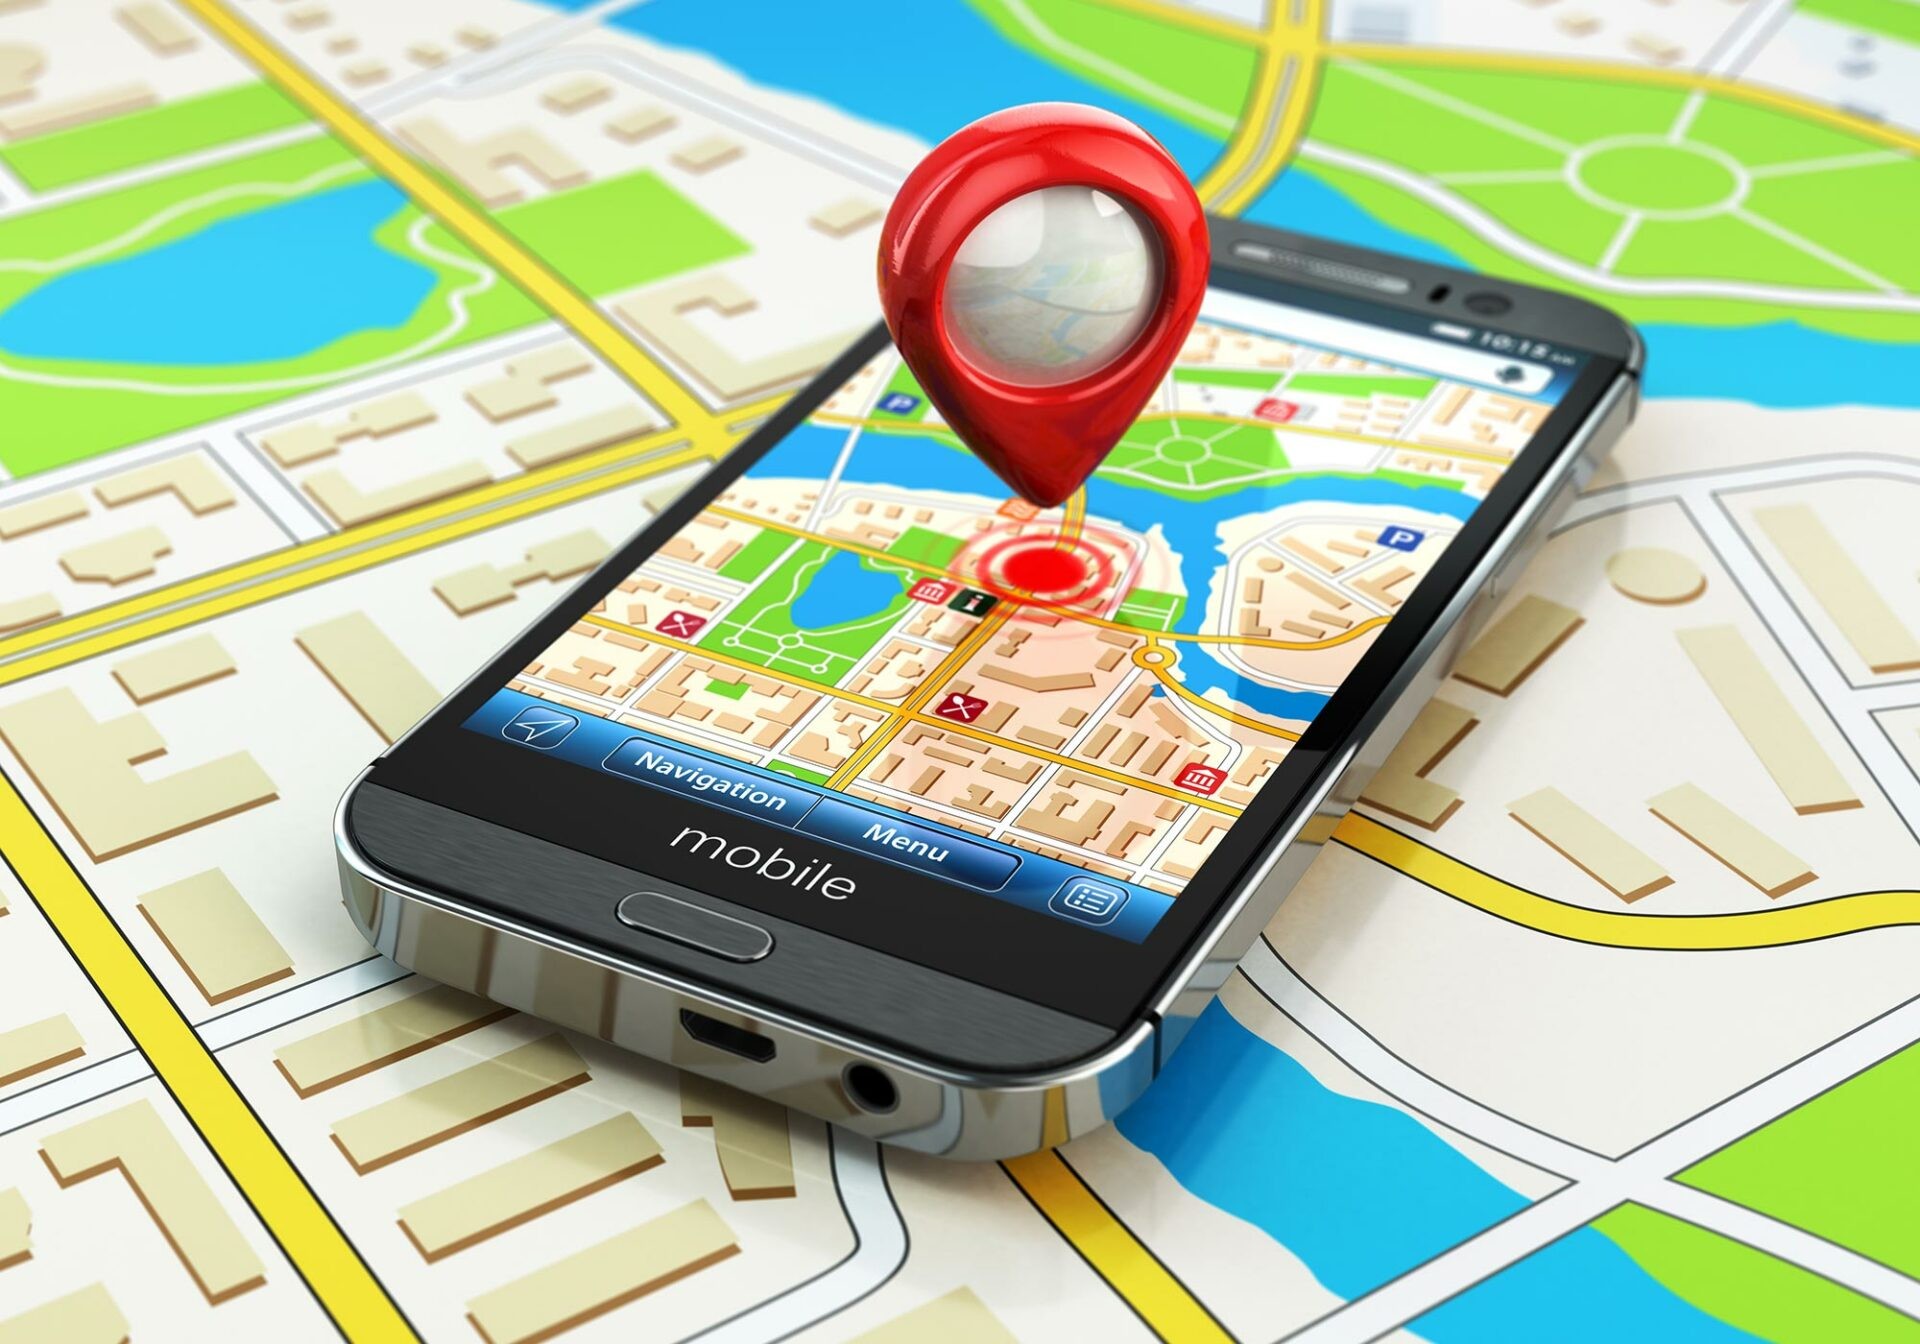 المساعدات الصوتية الافتراضية تسهل استخدام أجهزة GPS